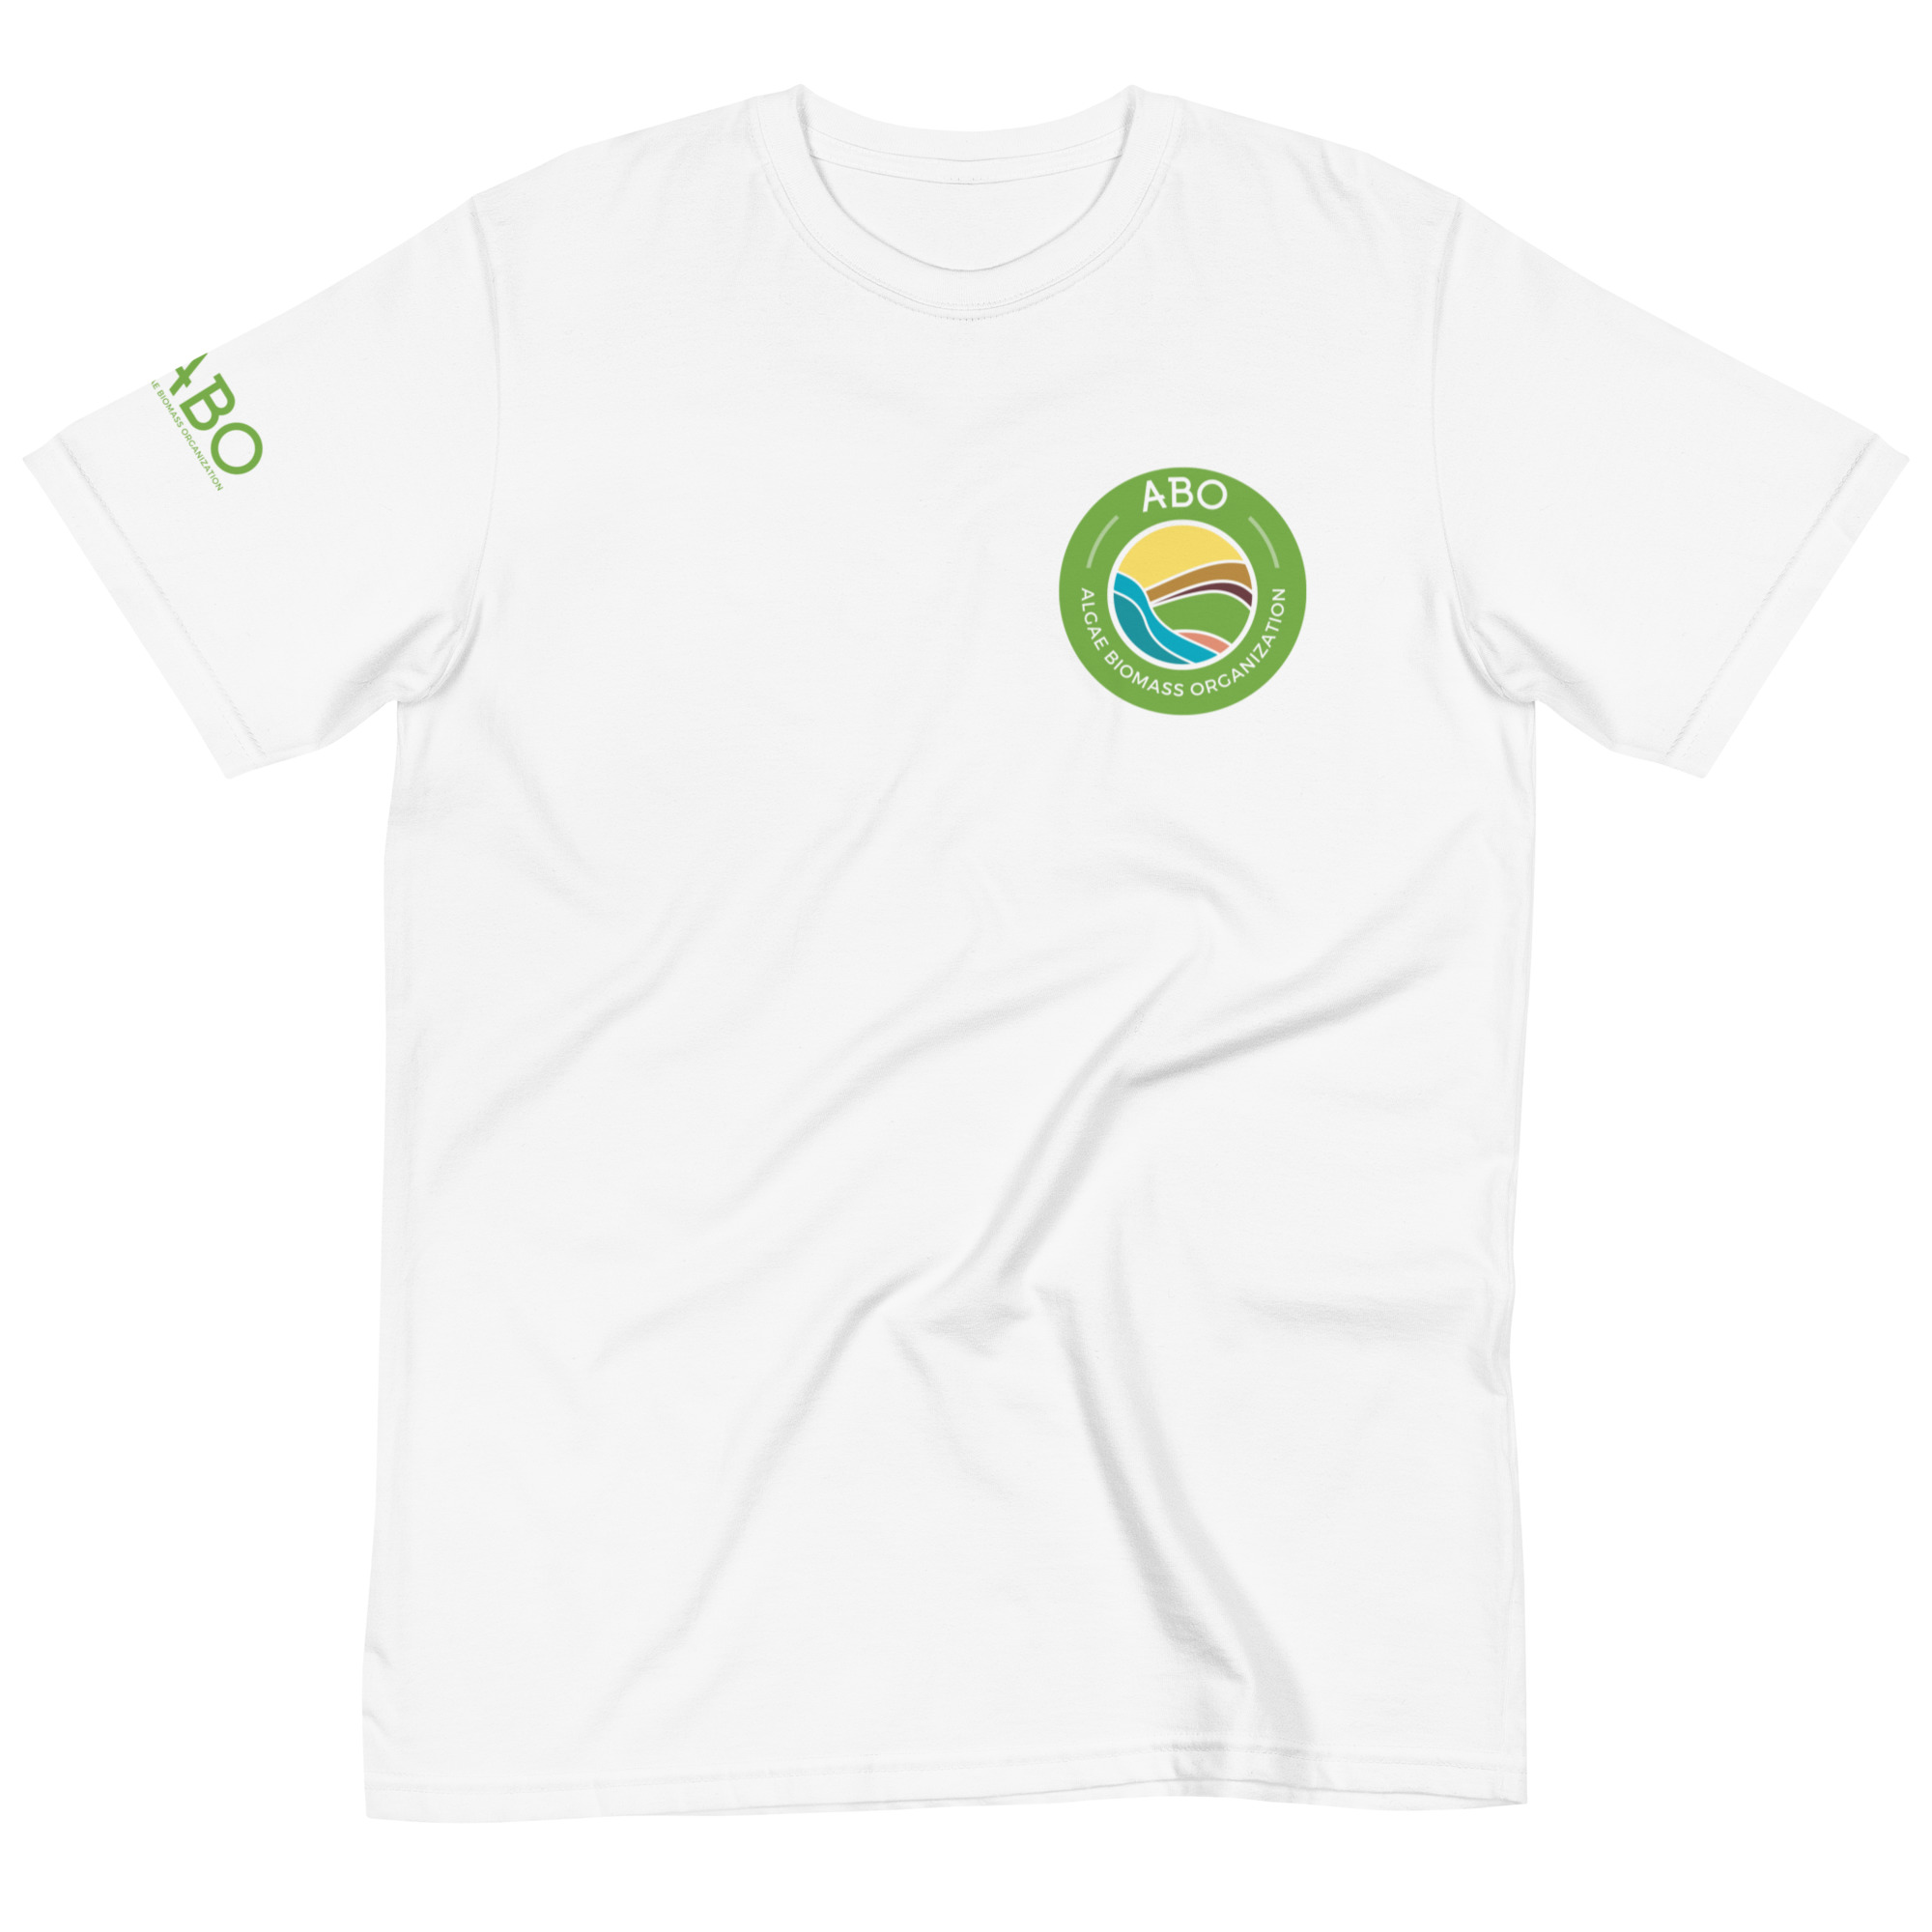 Organic T-Shirt - Algae Biomass Organization